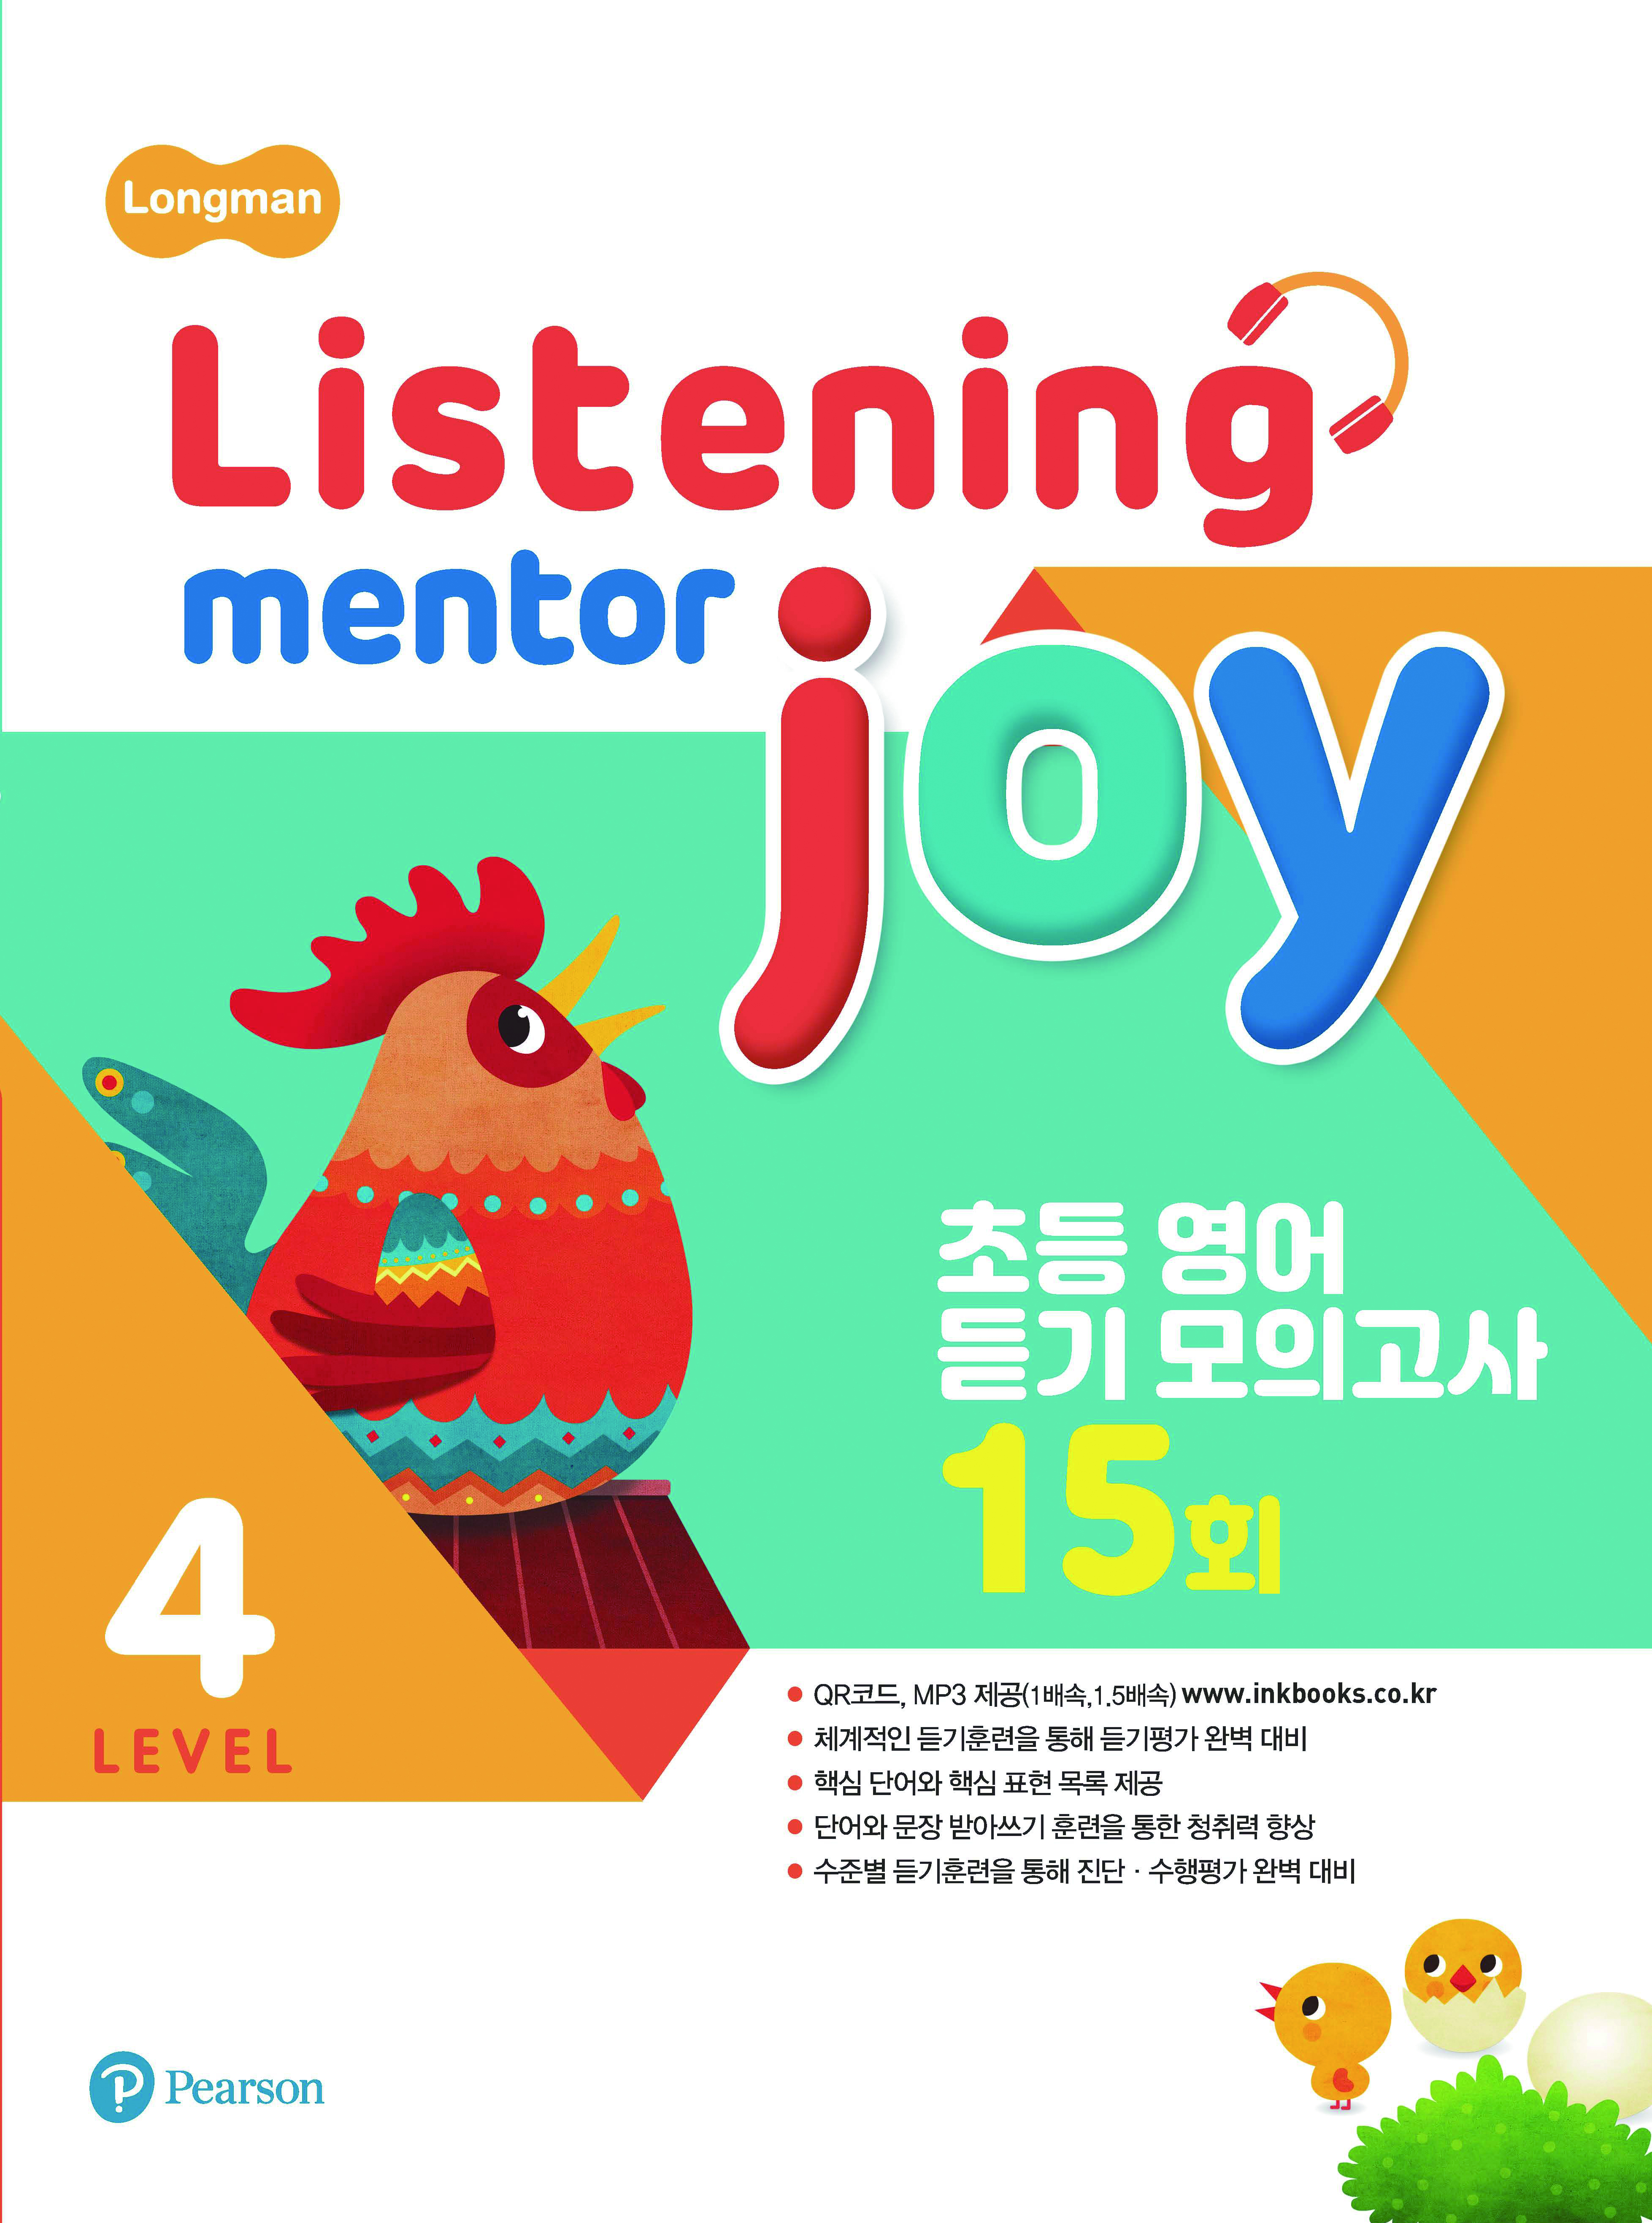 Listening Mentor Joy 4